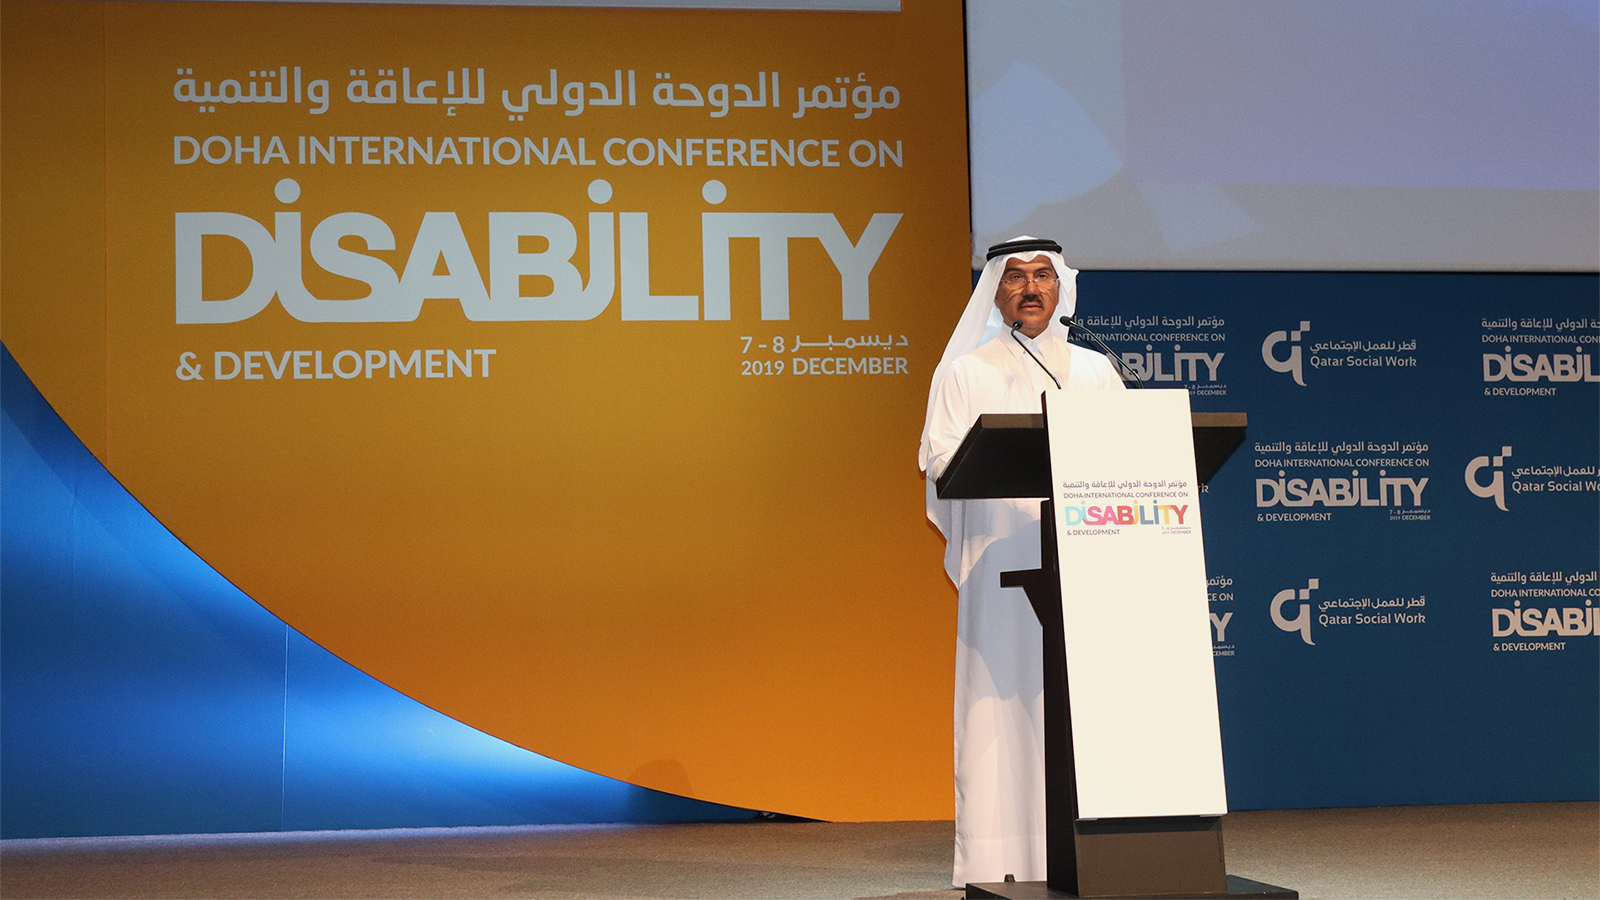 ‪أمين عام وزارة الخارجية القطرية يؤكد التزام بلاده بتوصيات المؤتمر‬ (الجزيرة)